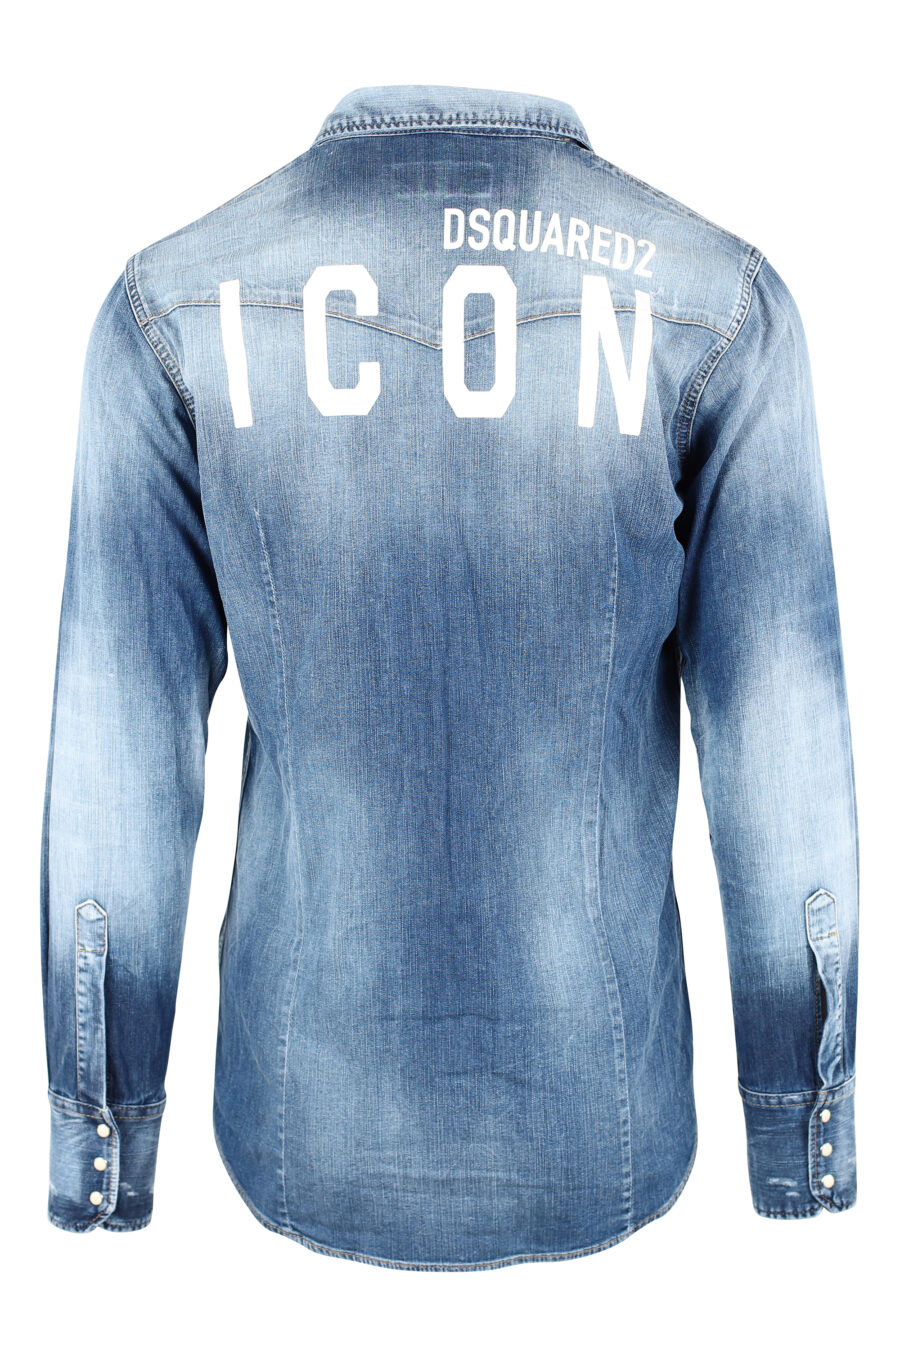 Camisa vaquera azul desgastada "icon western" - IMG 9768